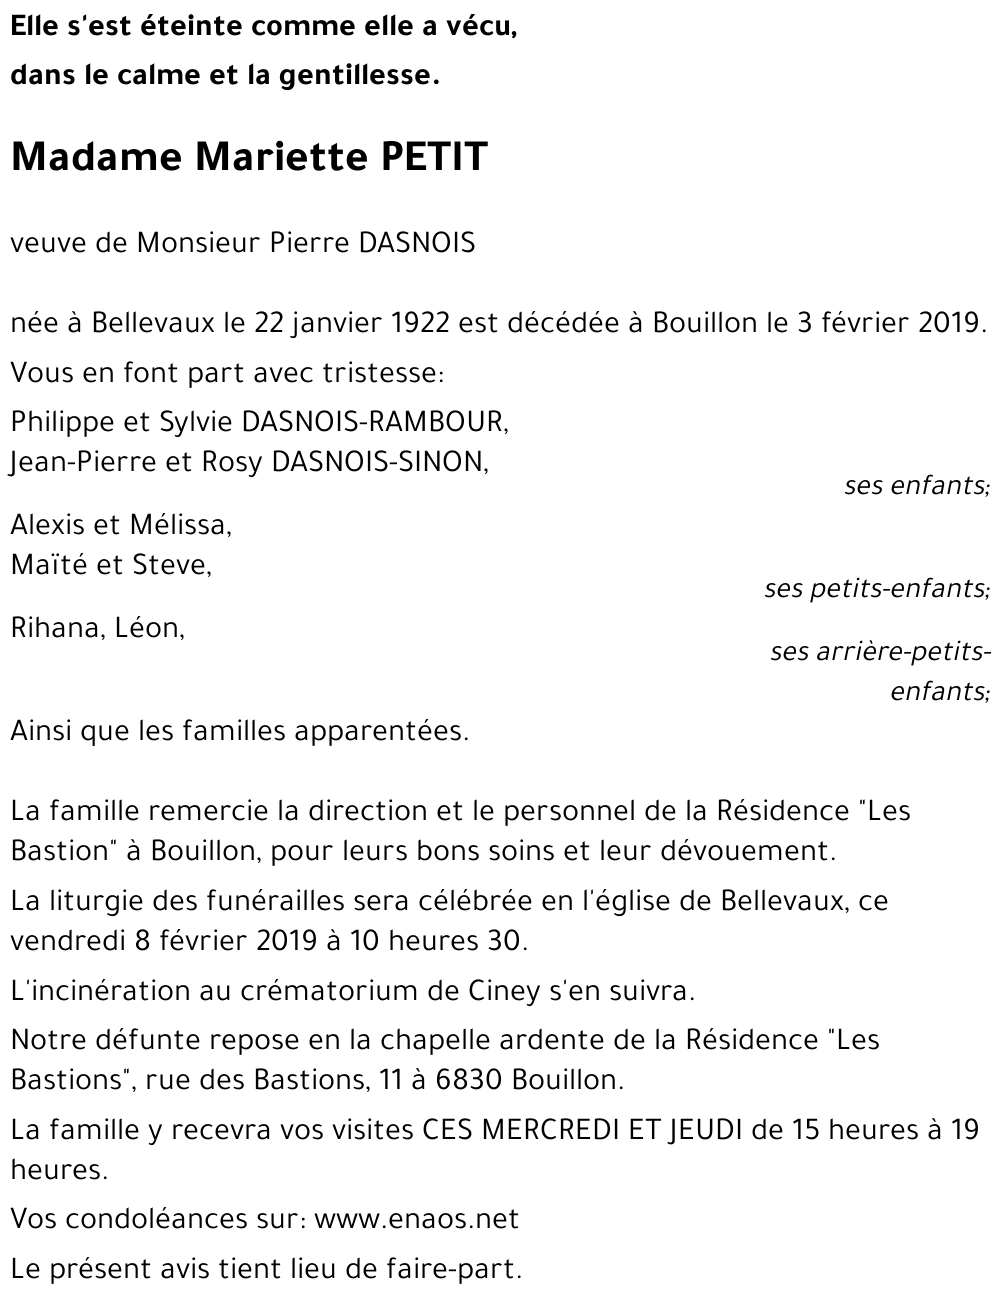 Avis de décès de Mariette PETIT décédé le 03/02/2019 à Bouillon ...